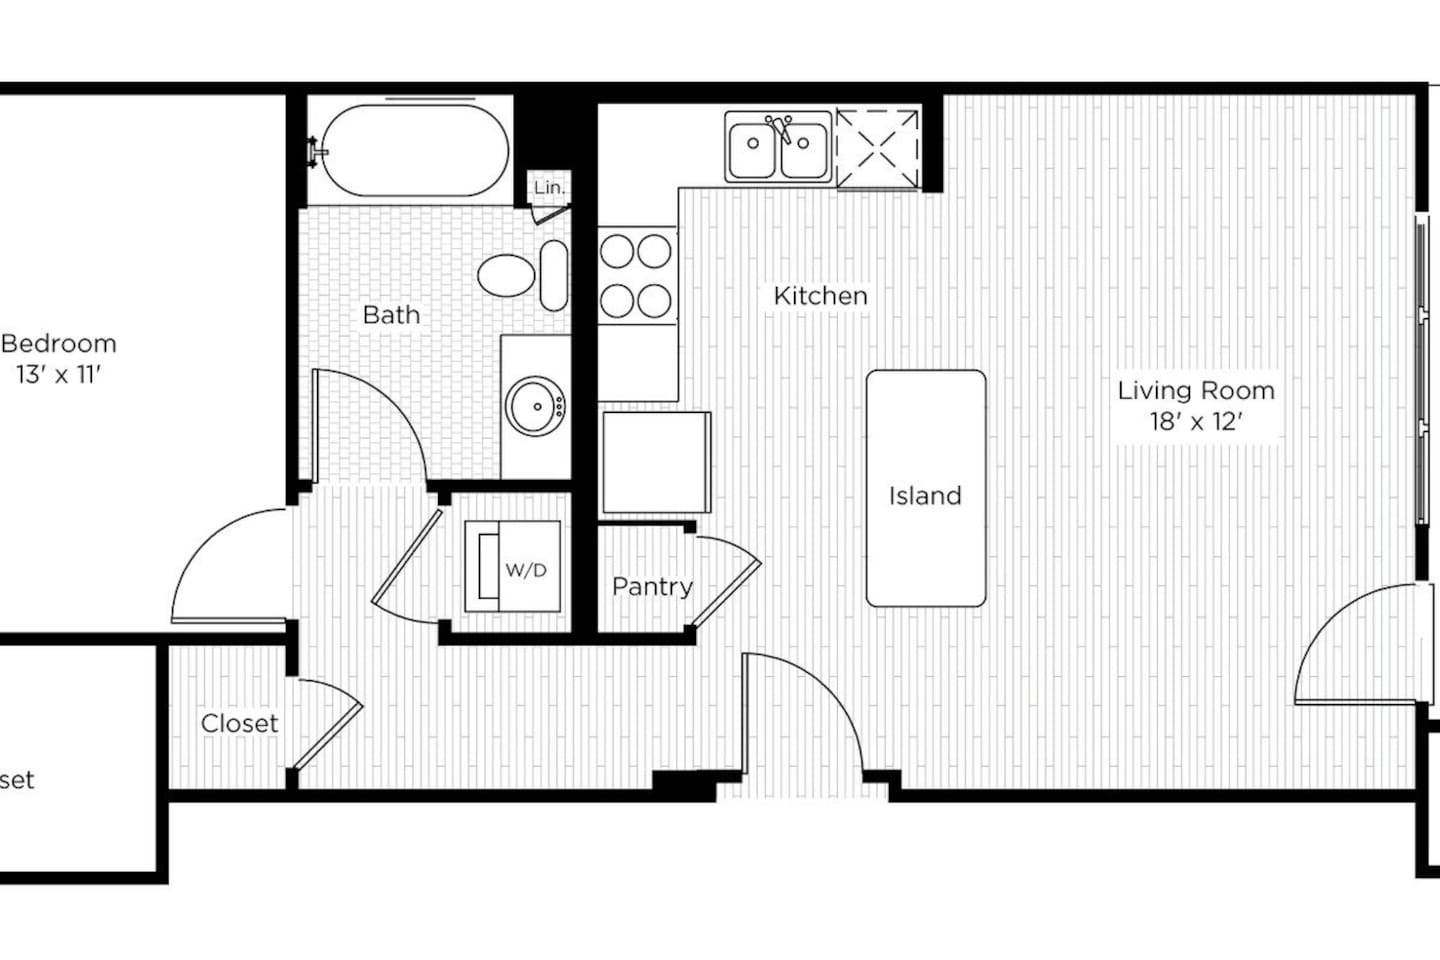 Floorplan diagram for 1BS, showing 1 bedroom